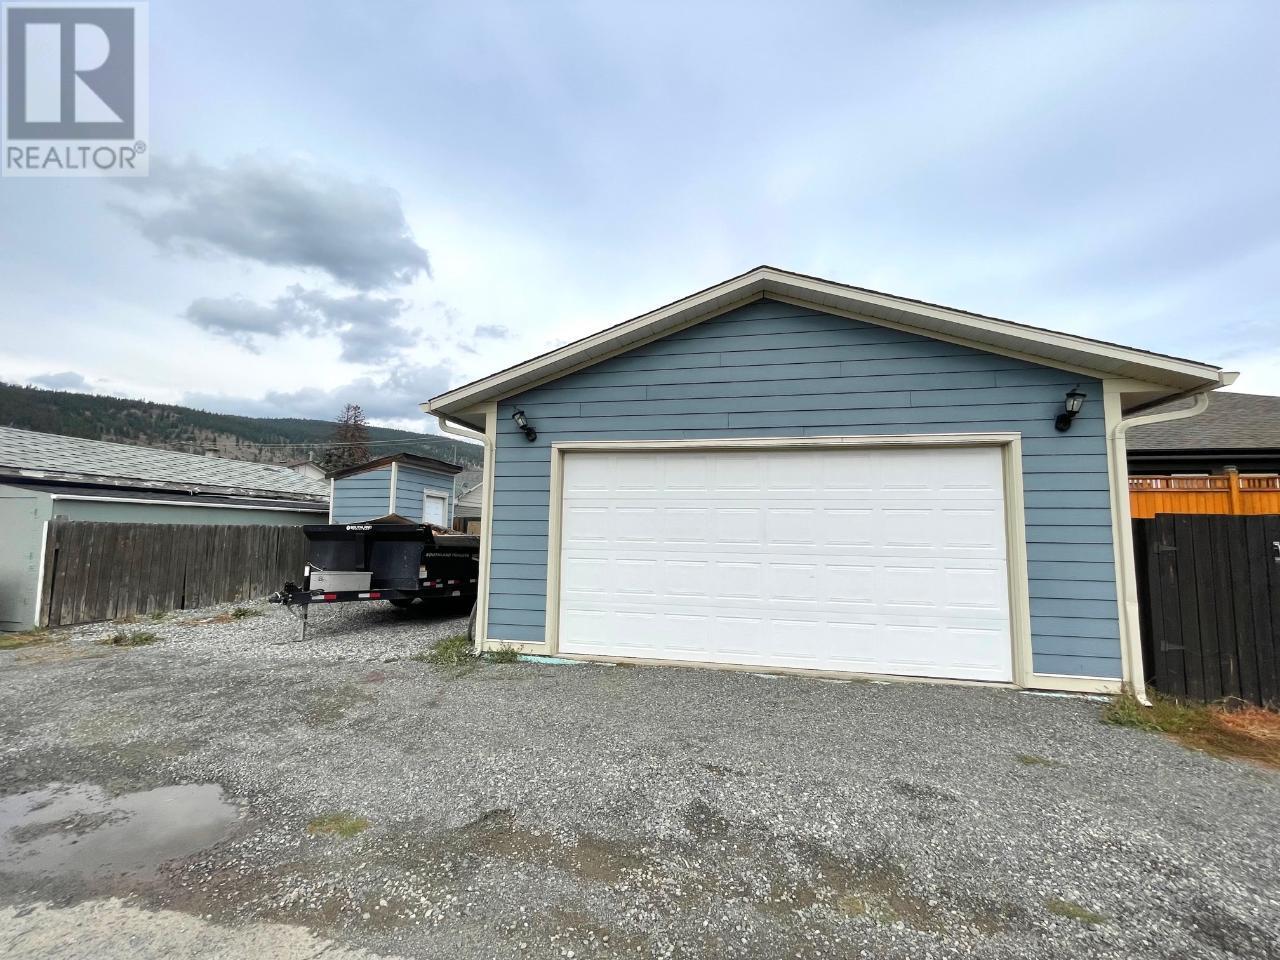 












1640 COLDWATER AVE

,
Merritt,




British Columbia
V1K1B8

